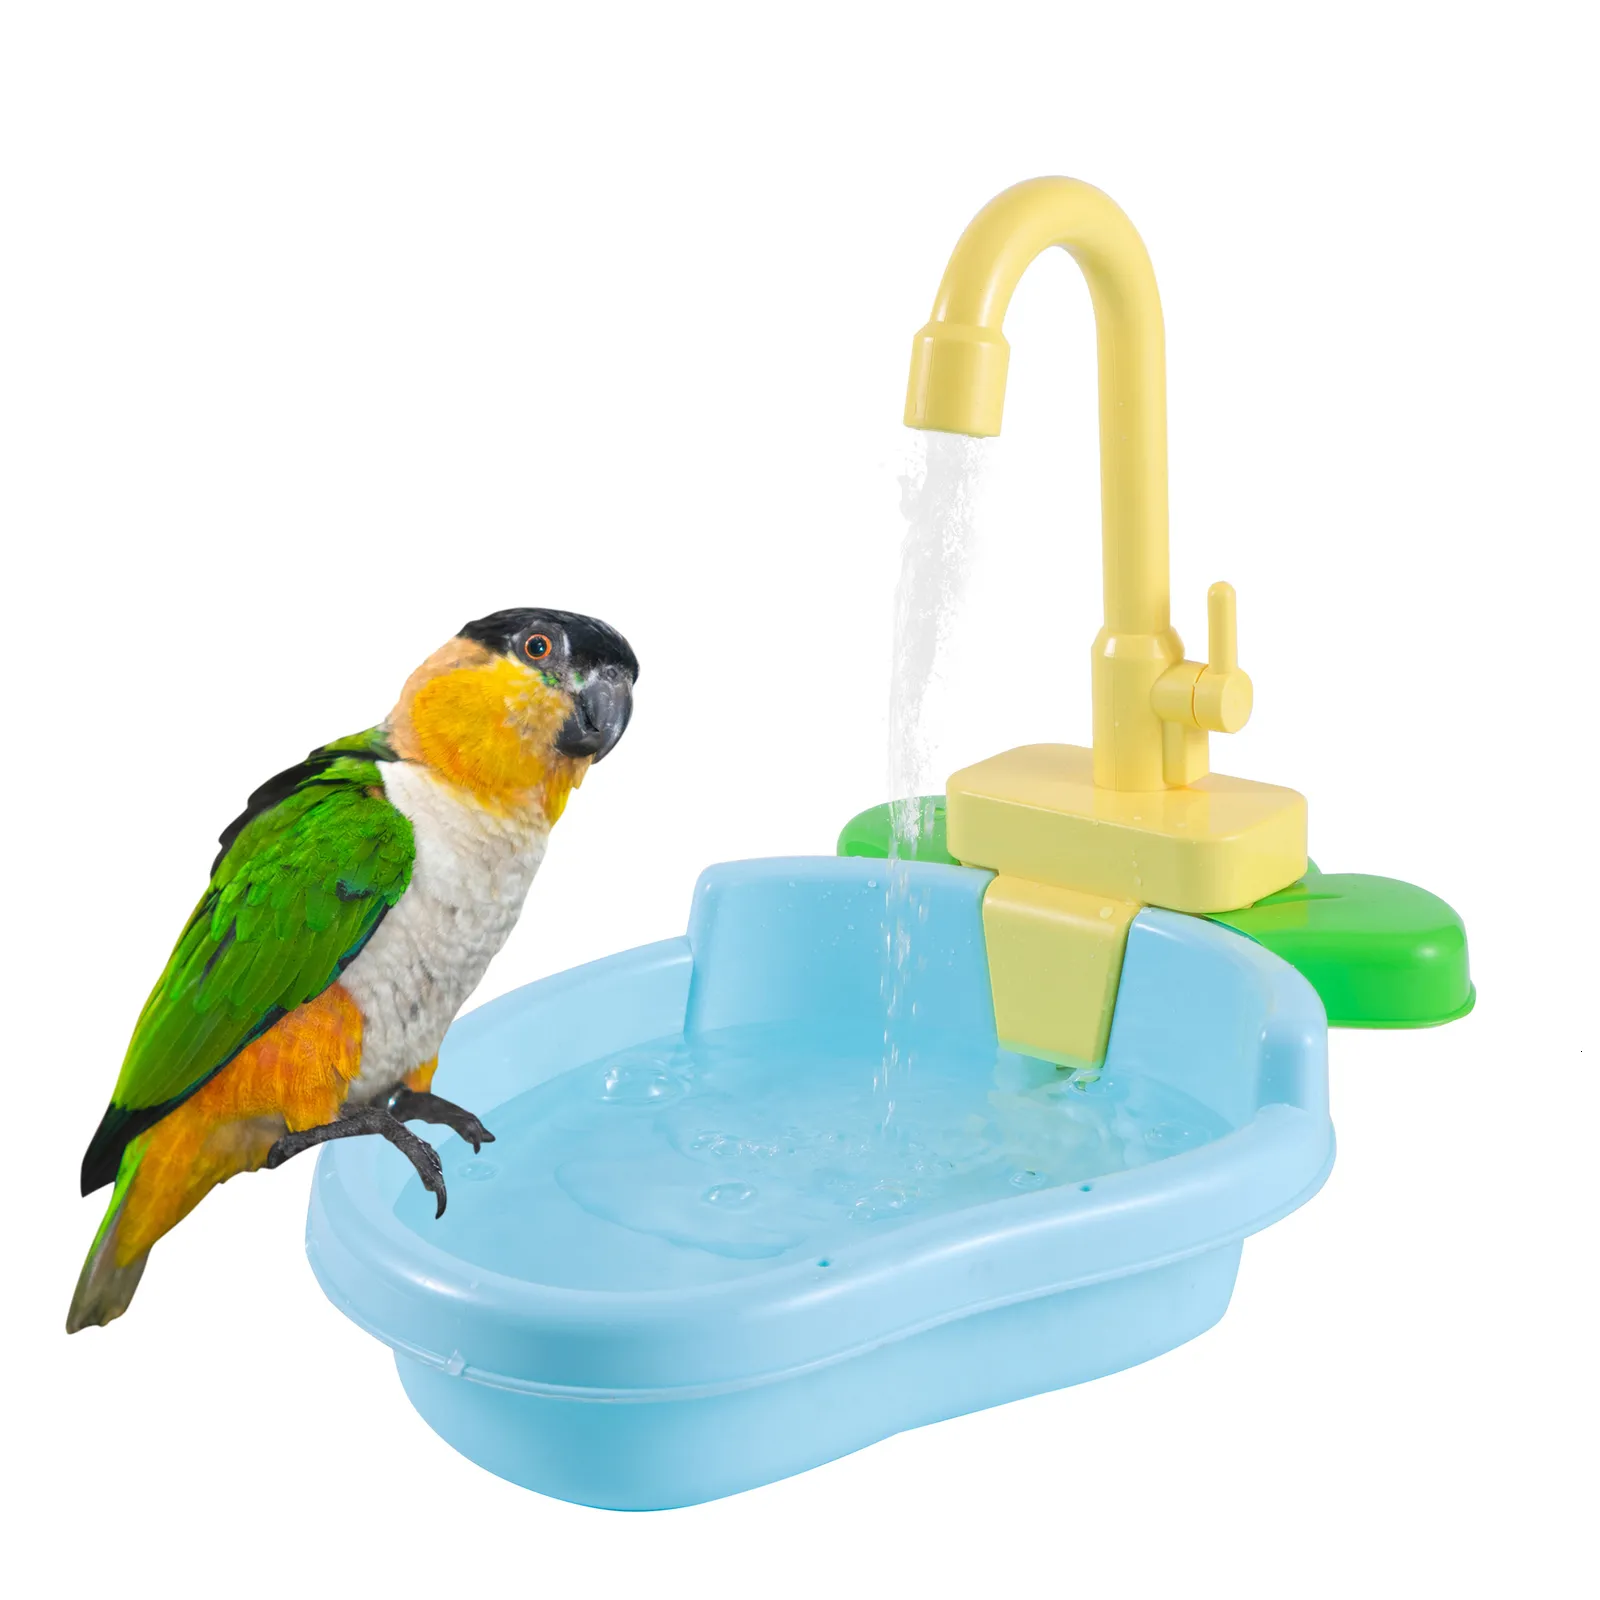 Outros suprimentos para animais de estimação Papold poleiro chuveiro banho de banheira de banheira Bacia Banch Acessórios Bathtub 1pc 230816